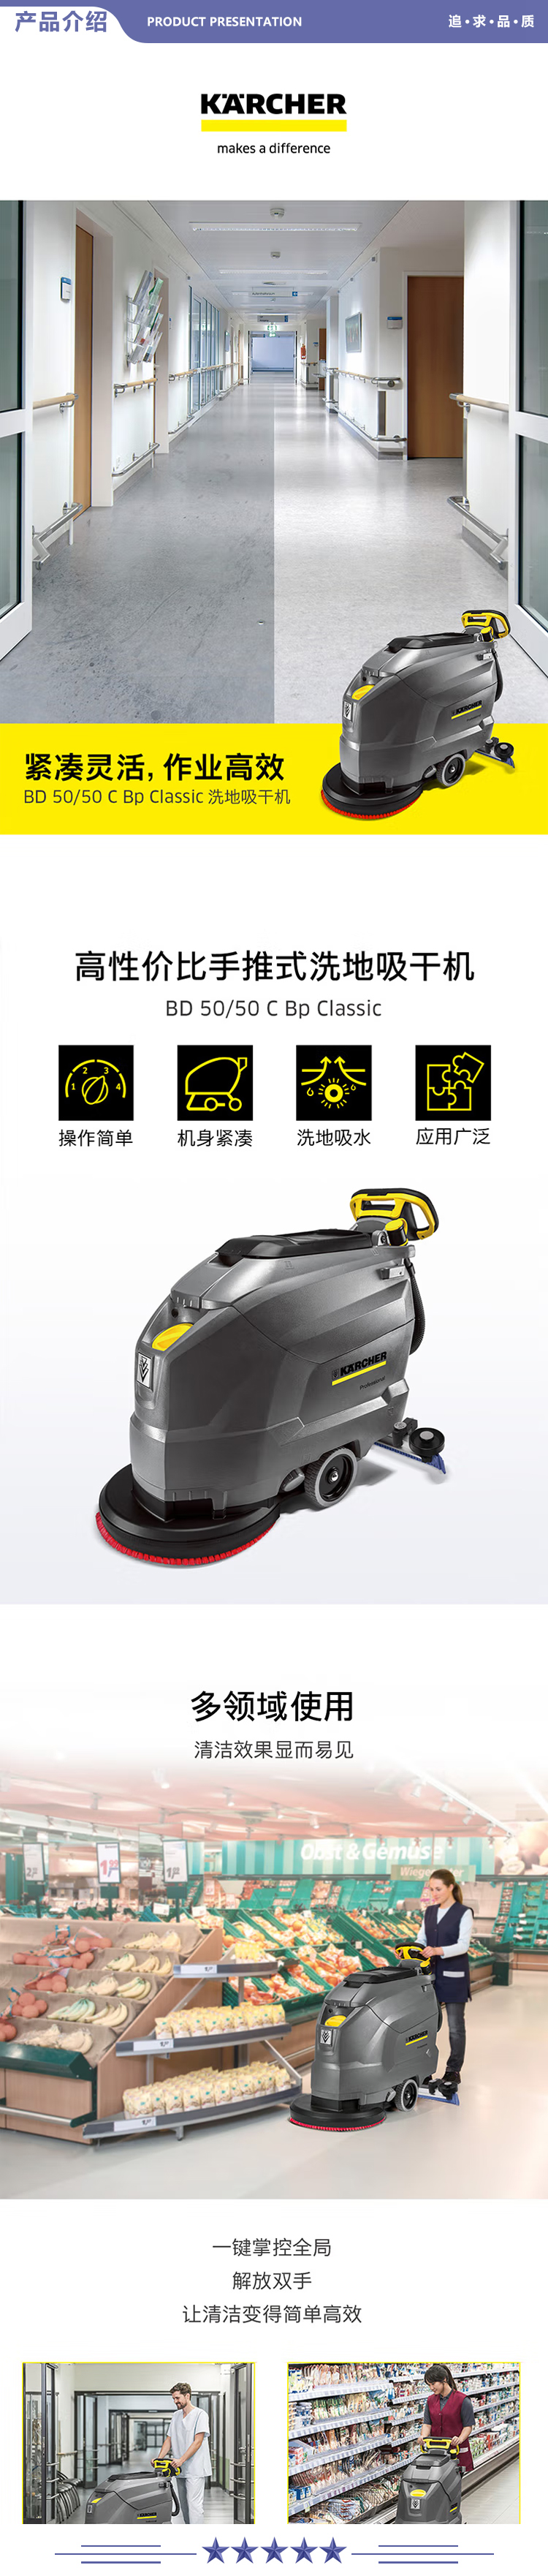 卡赫 KARCHER BD50-50 手推式洗地机洗地吸干机擦地机 适用于机场火车站工厂商场宾馆超市 标准版 2.jpg